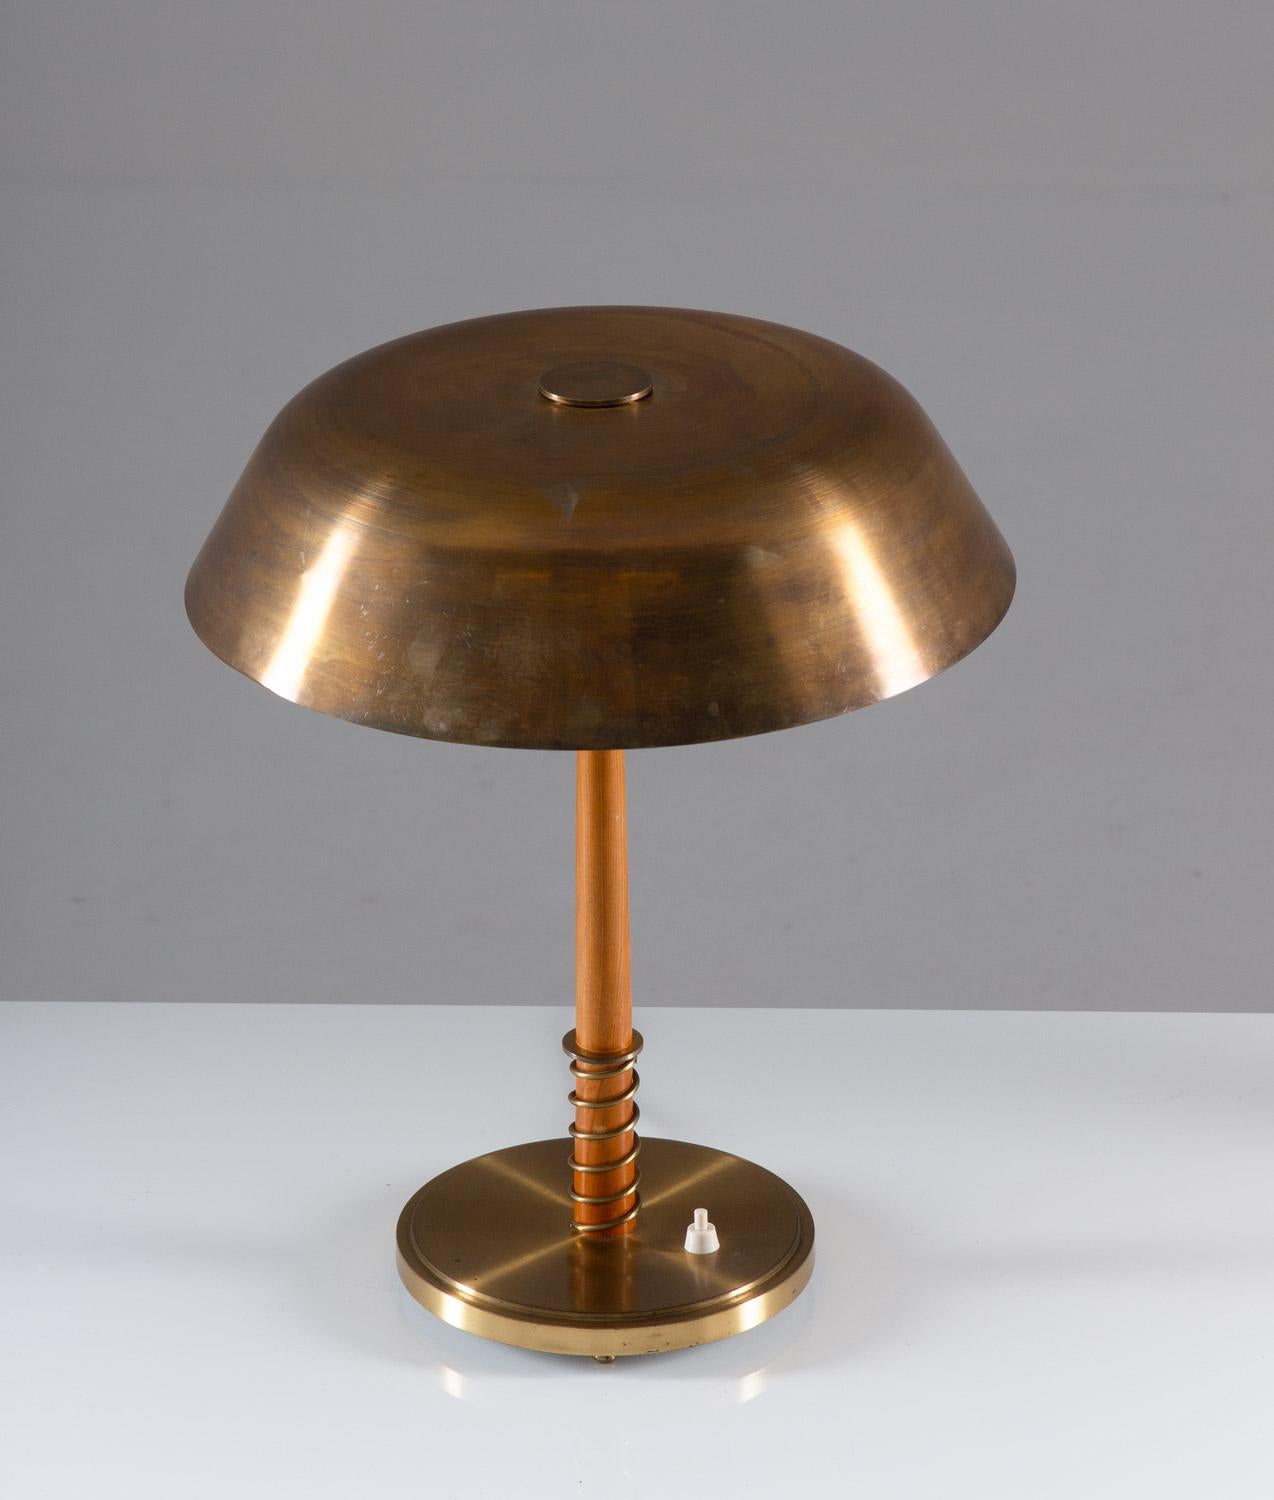 Rare lampe de table en laiton et bois par Harald Notini pour Böhlmarks, Suède.
Cette lampe élégante a été fabriquée pendant l'ère moderne suédoise et est de très haute qualité.
Condition : Très bon état avec une belle patine. Une petite bosse sur